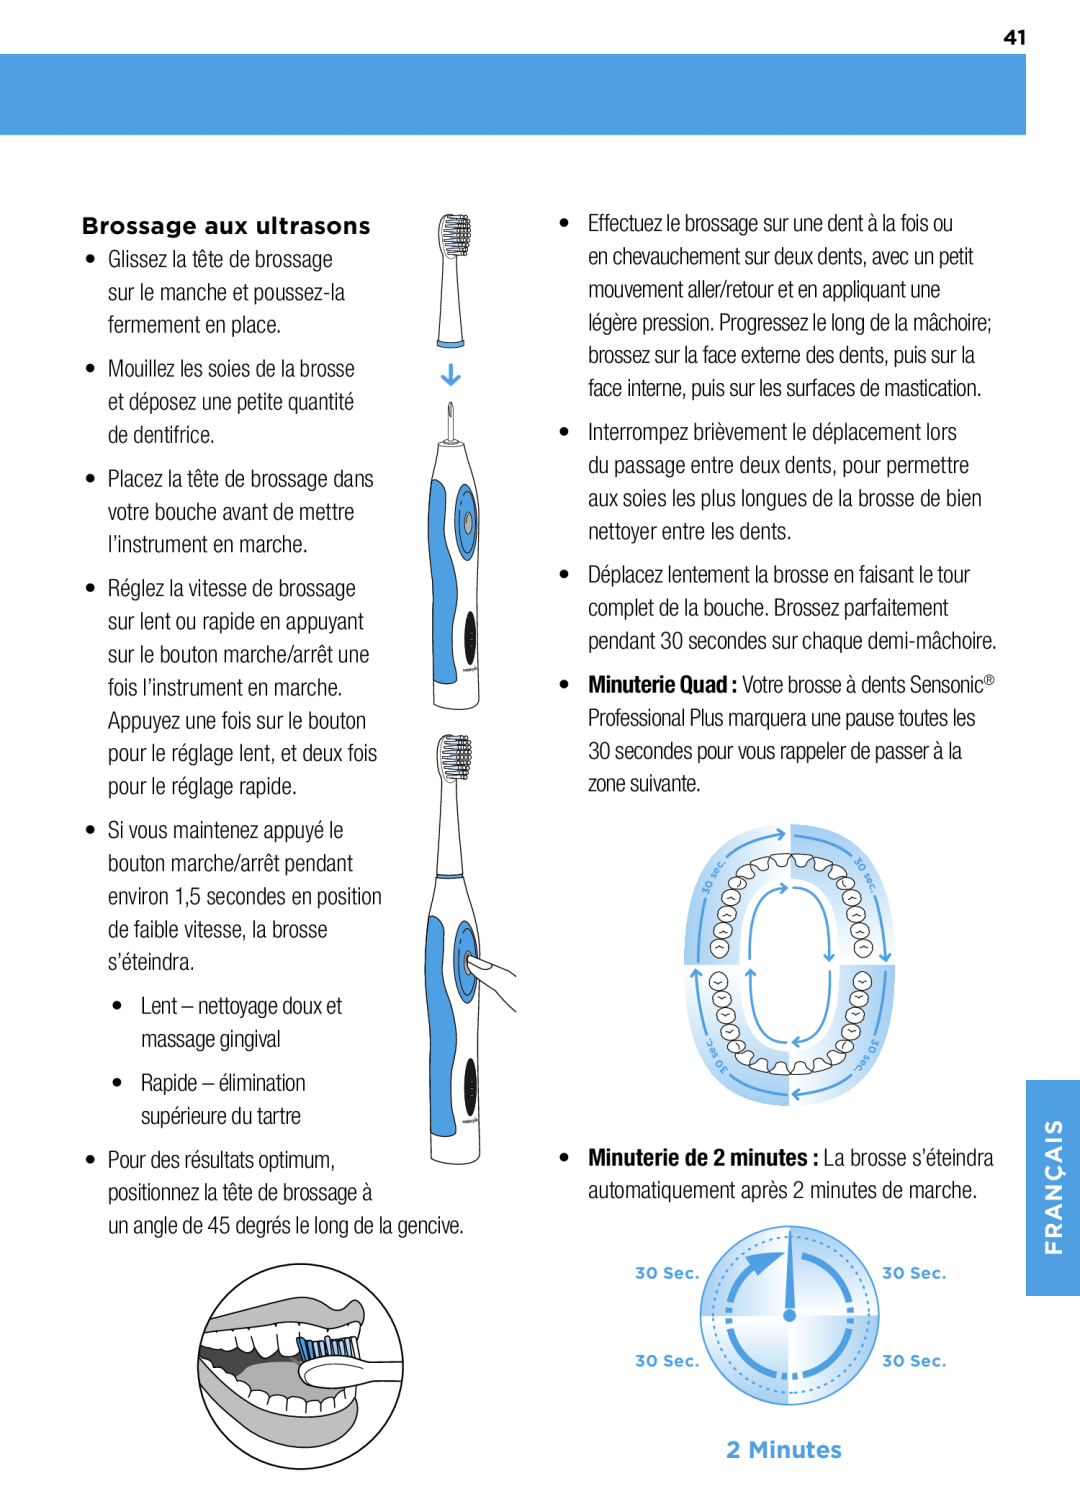 Waterpik Technologies wp-900 manual Brossage aux ultrasons, Appuyez une fois sur le bouton, s’éteindra, Minutes 